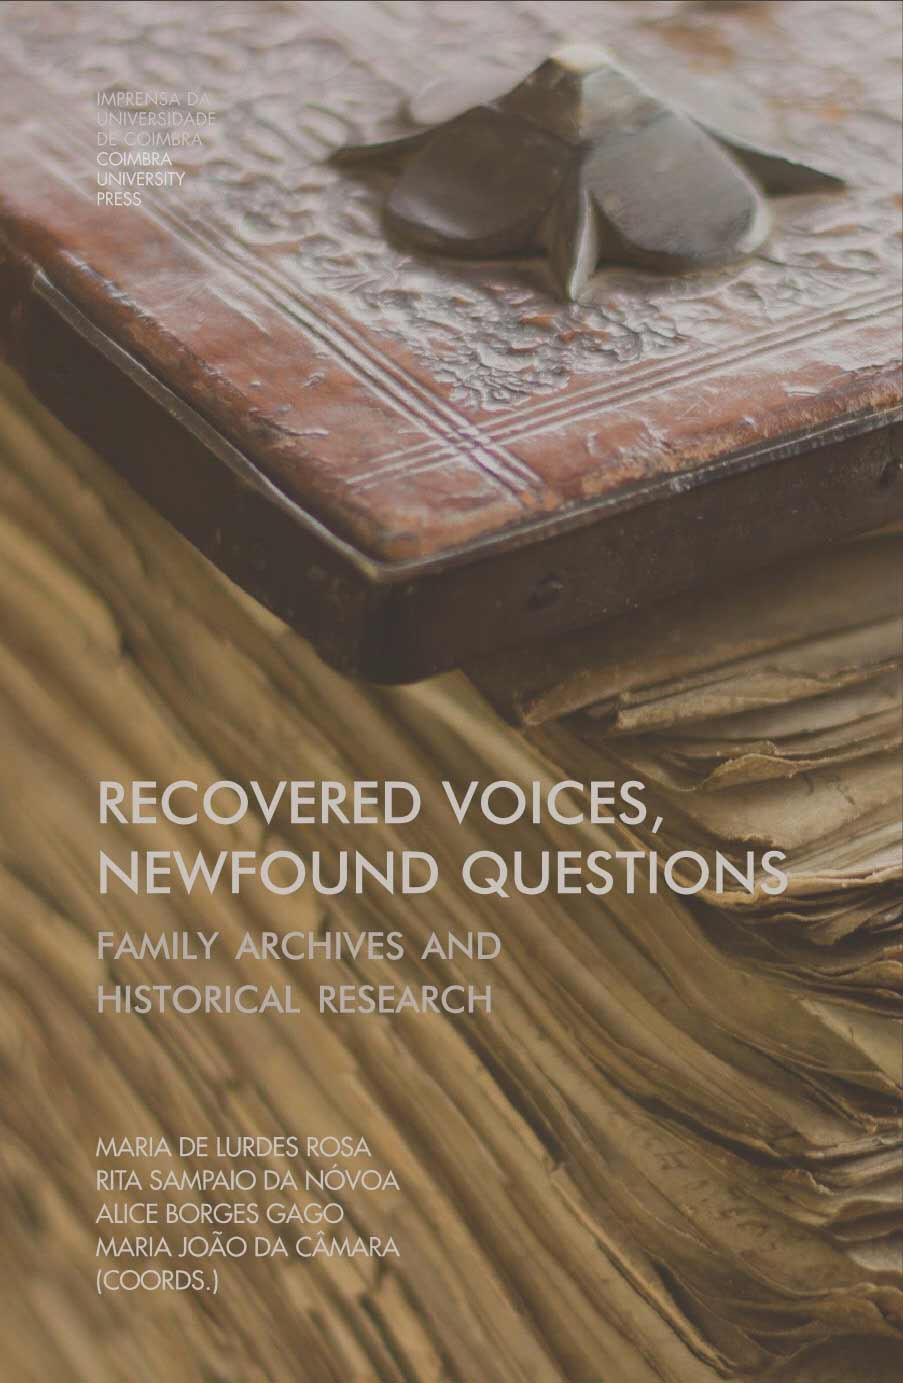 Capa da publicação Recovered voices, newfound questions